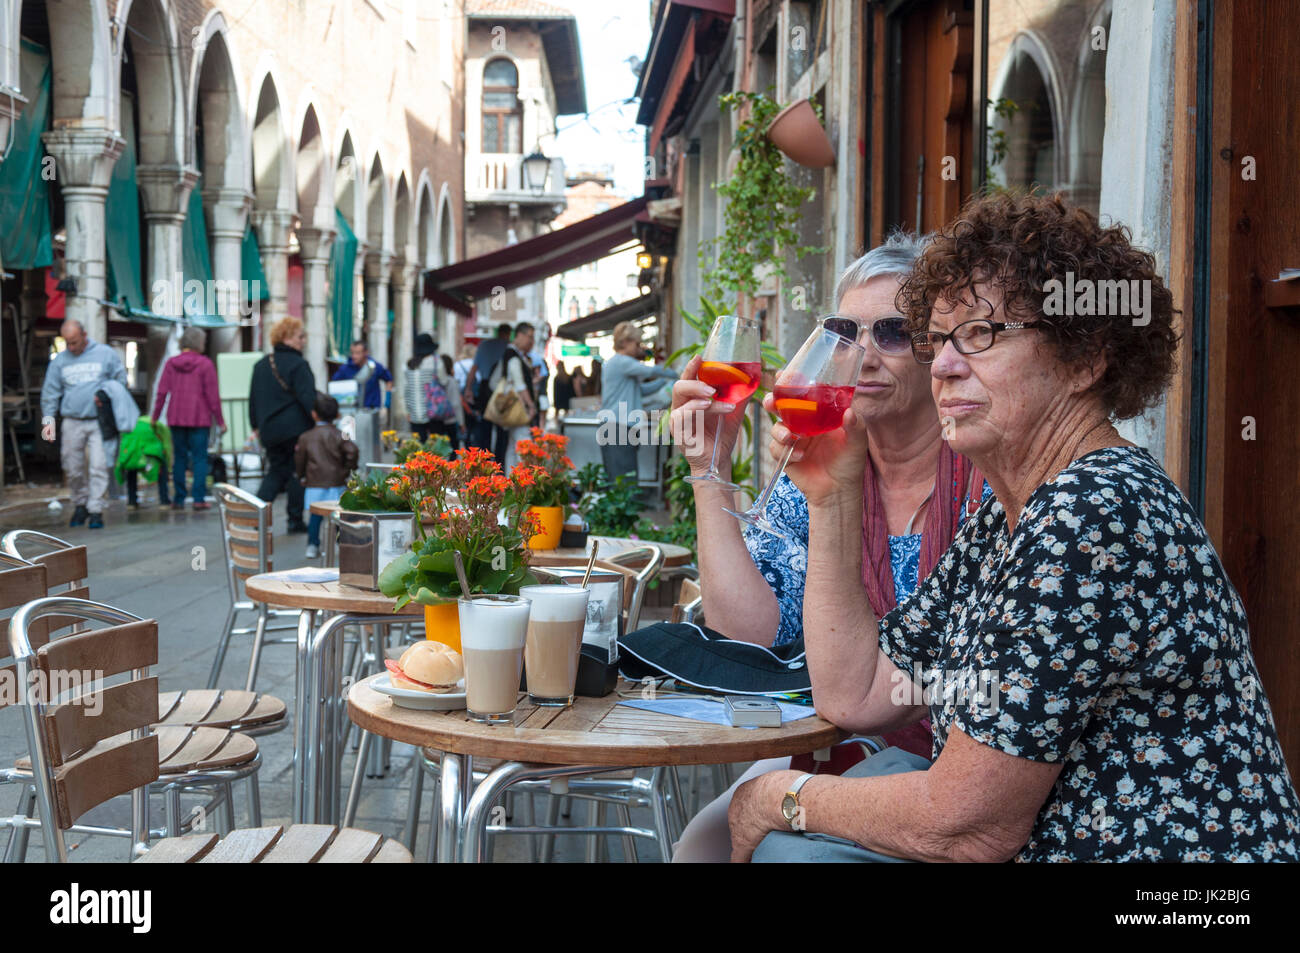 Zwei Frauen trinken einen Spritz, ein traditionelles alkoholisches Getränk in Venedig, Italien Stockfoto